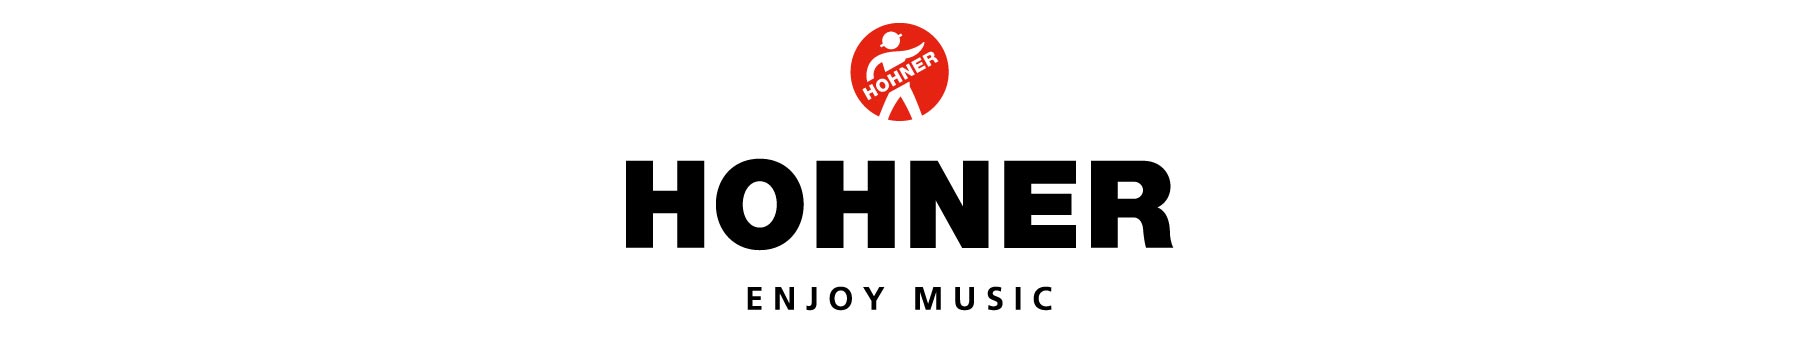 Hohner Logo Brand Landing Header